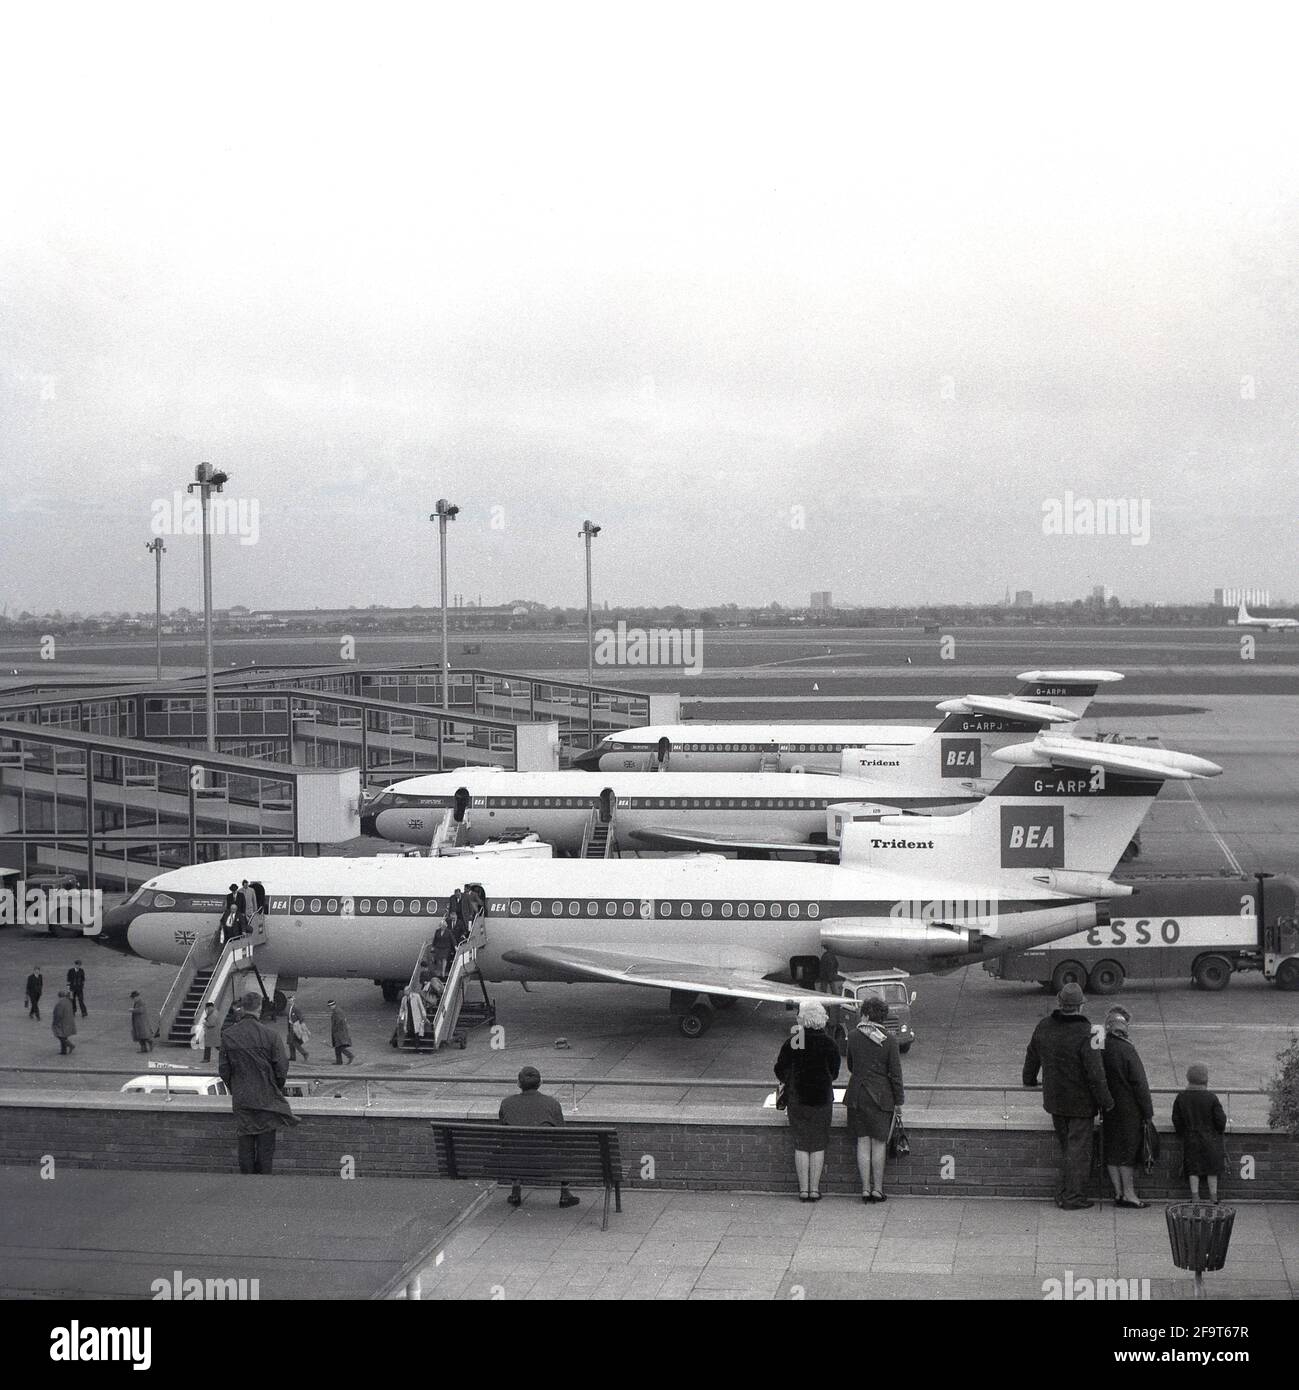 1967, storico, all'aeroporto di heathrow, tre aerei BEA Hawker SiddeleyTrident a reazione parcheggiati fuori dai cancelli d'imbarco del terminal Europa, con i passeggeri che sbarcano da uno degli aerei, Londra, Inghilterra, Regno Unito. Un anno prima del 1966, l'aeroporto di Londra è stato rinominato Heathrow dopo l'originario villaggio rurale di Heath Row che ha fornito la terra per l'aeroporto. Il tetto dell'Europa Terminal era una popolare piattaforma di osservazione per i visitatori di vedere gli aerei e l'area circostante. Foto Stock